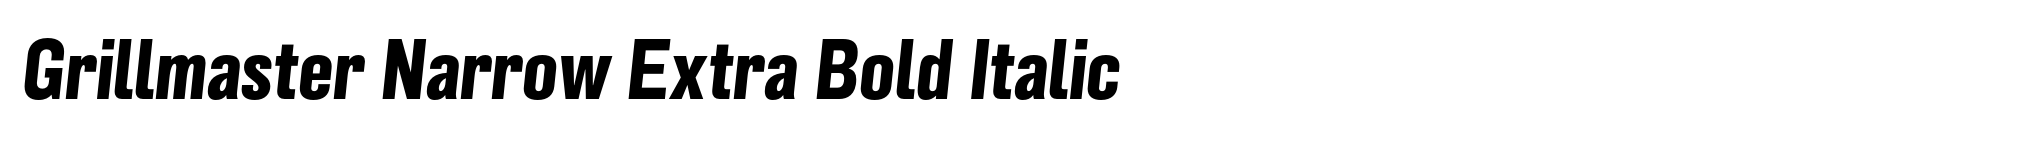 Grillmaster Narrow Extra Bold Italic image